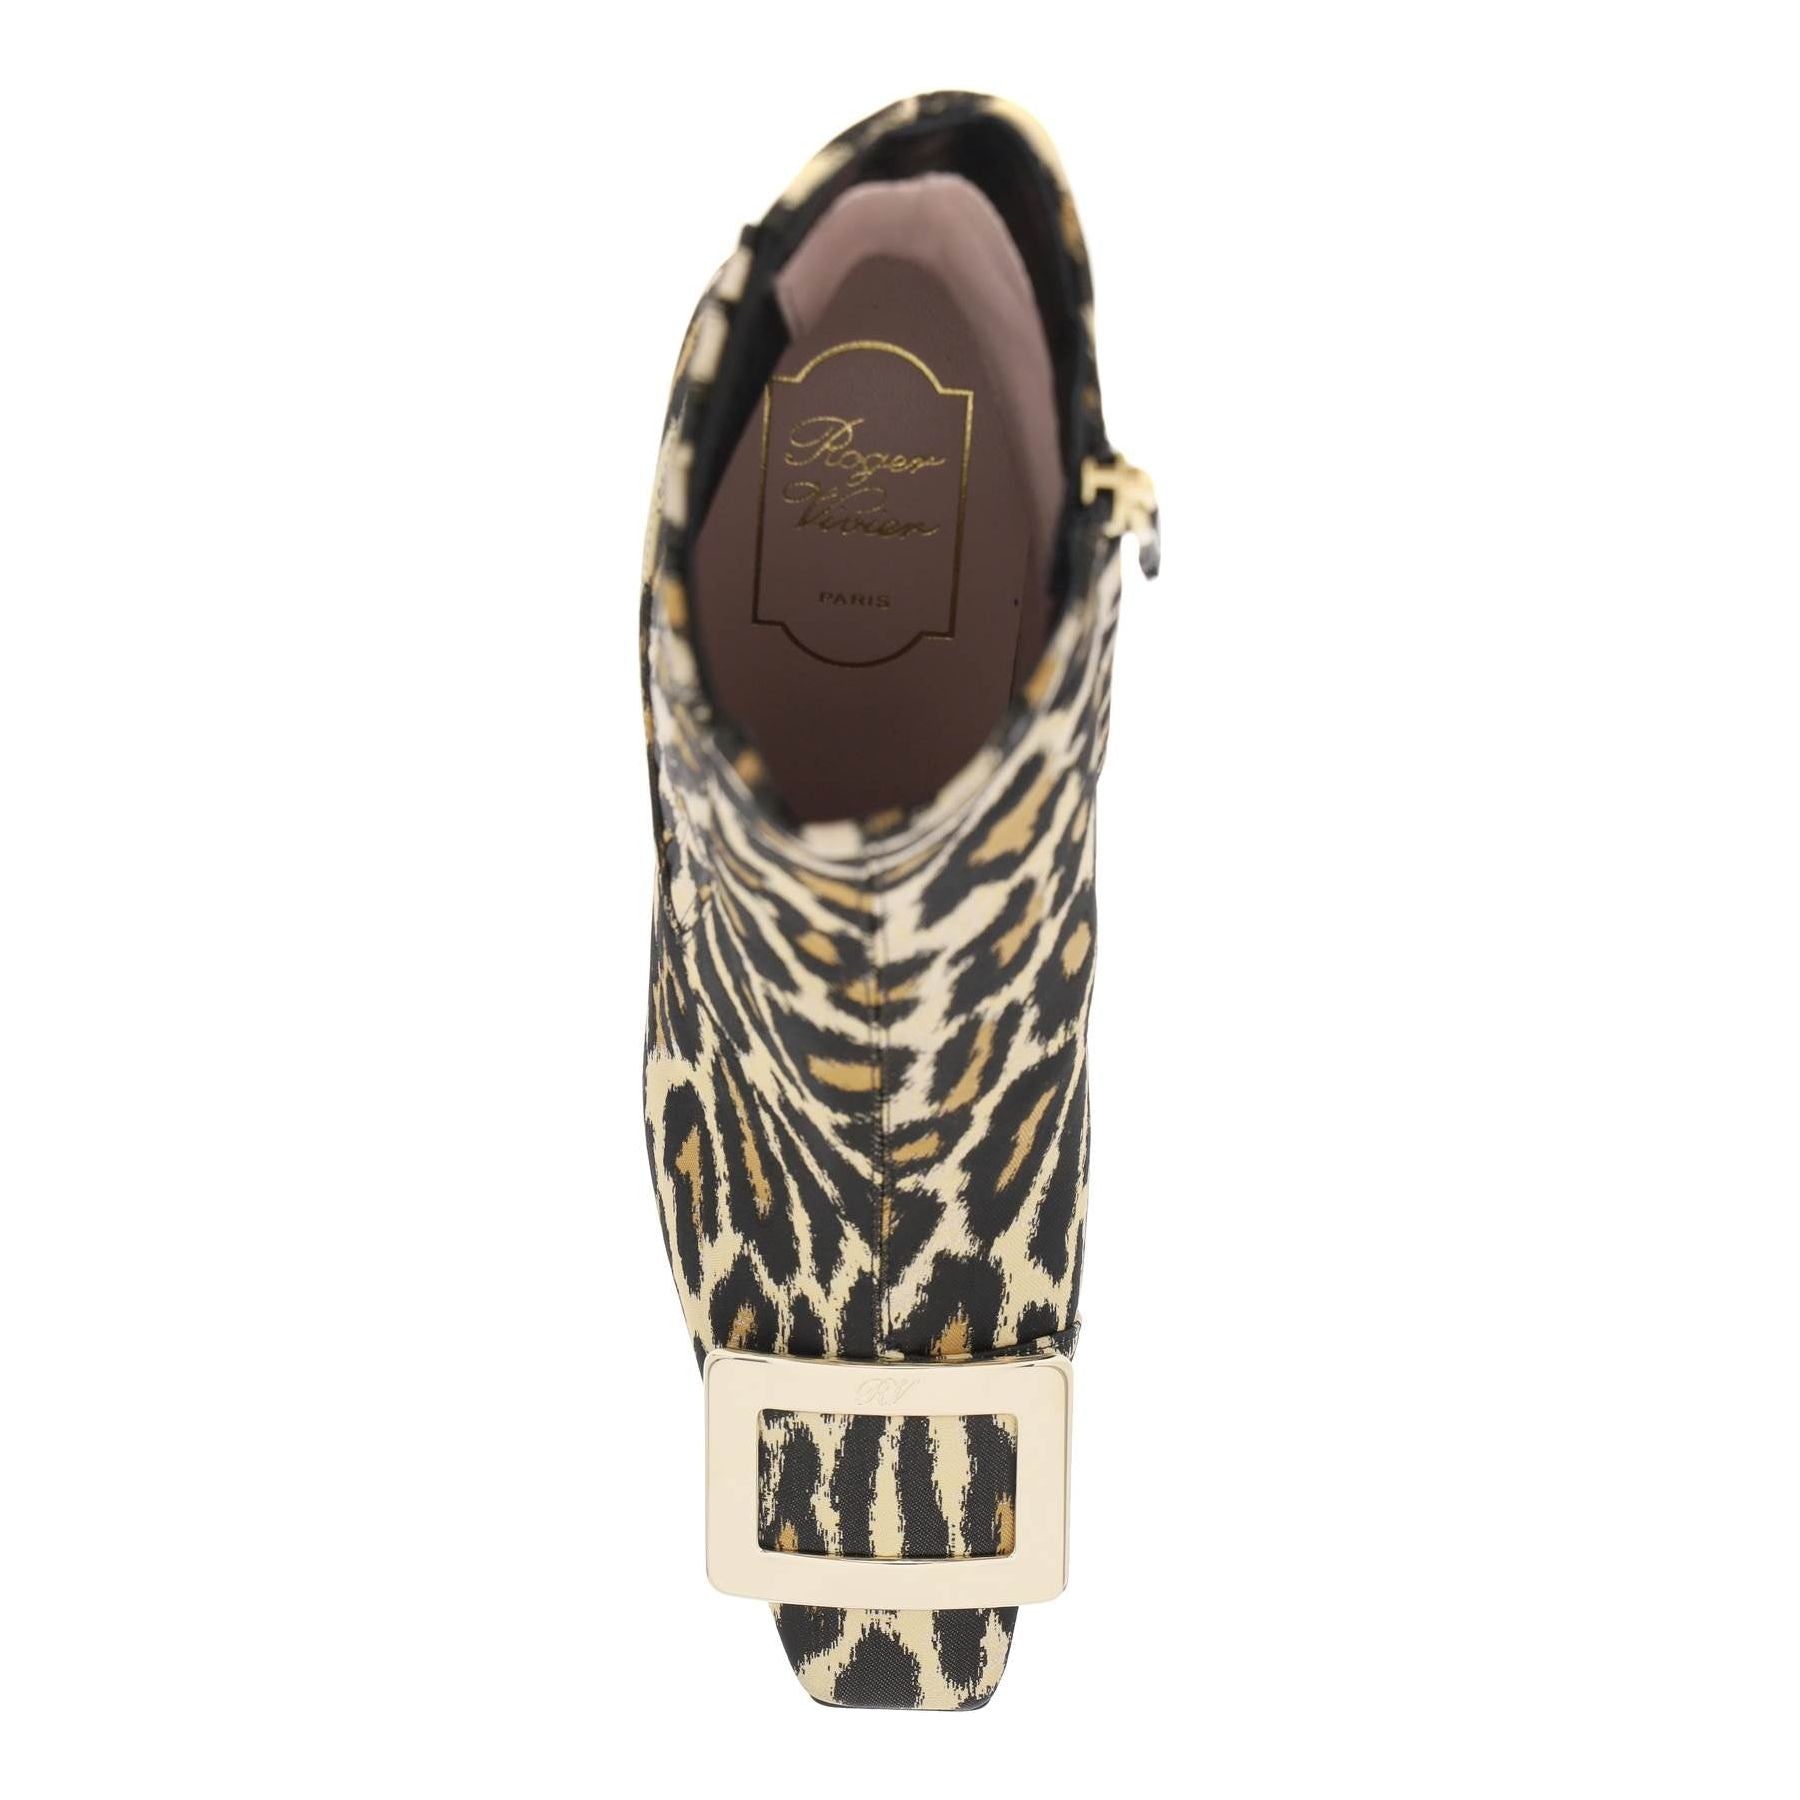 Leopard 'Belle Vivier' Chelsea Boots